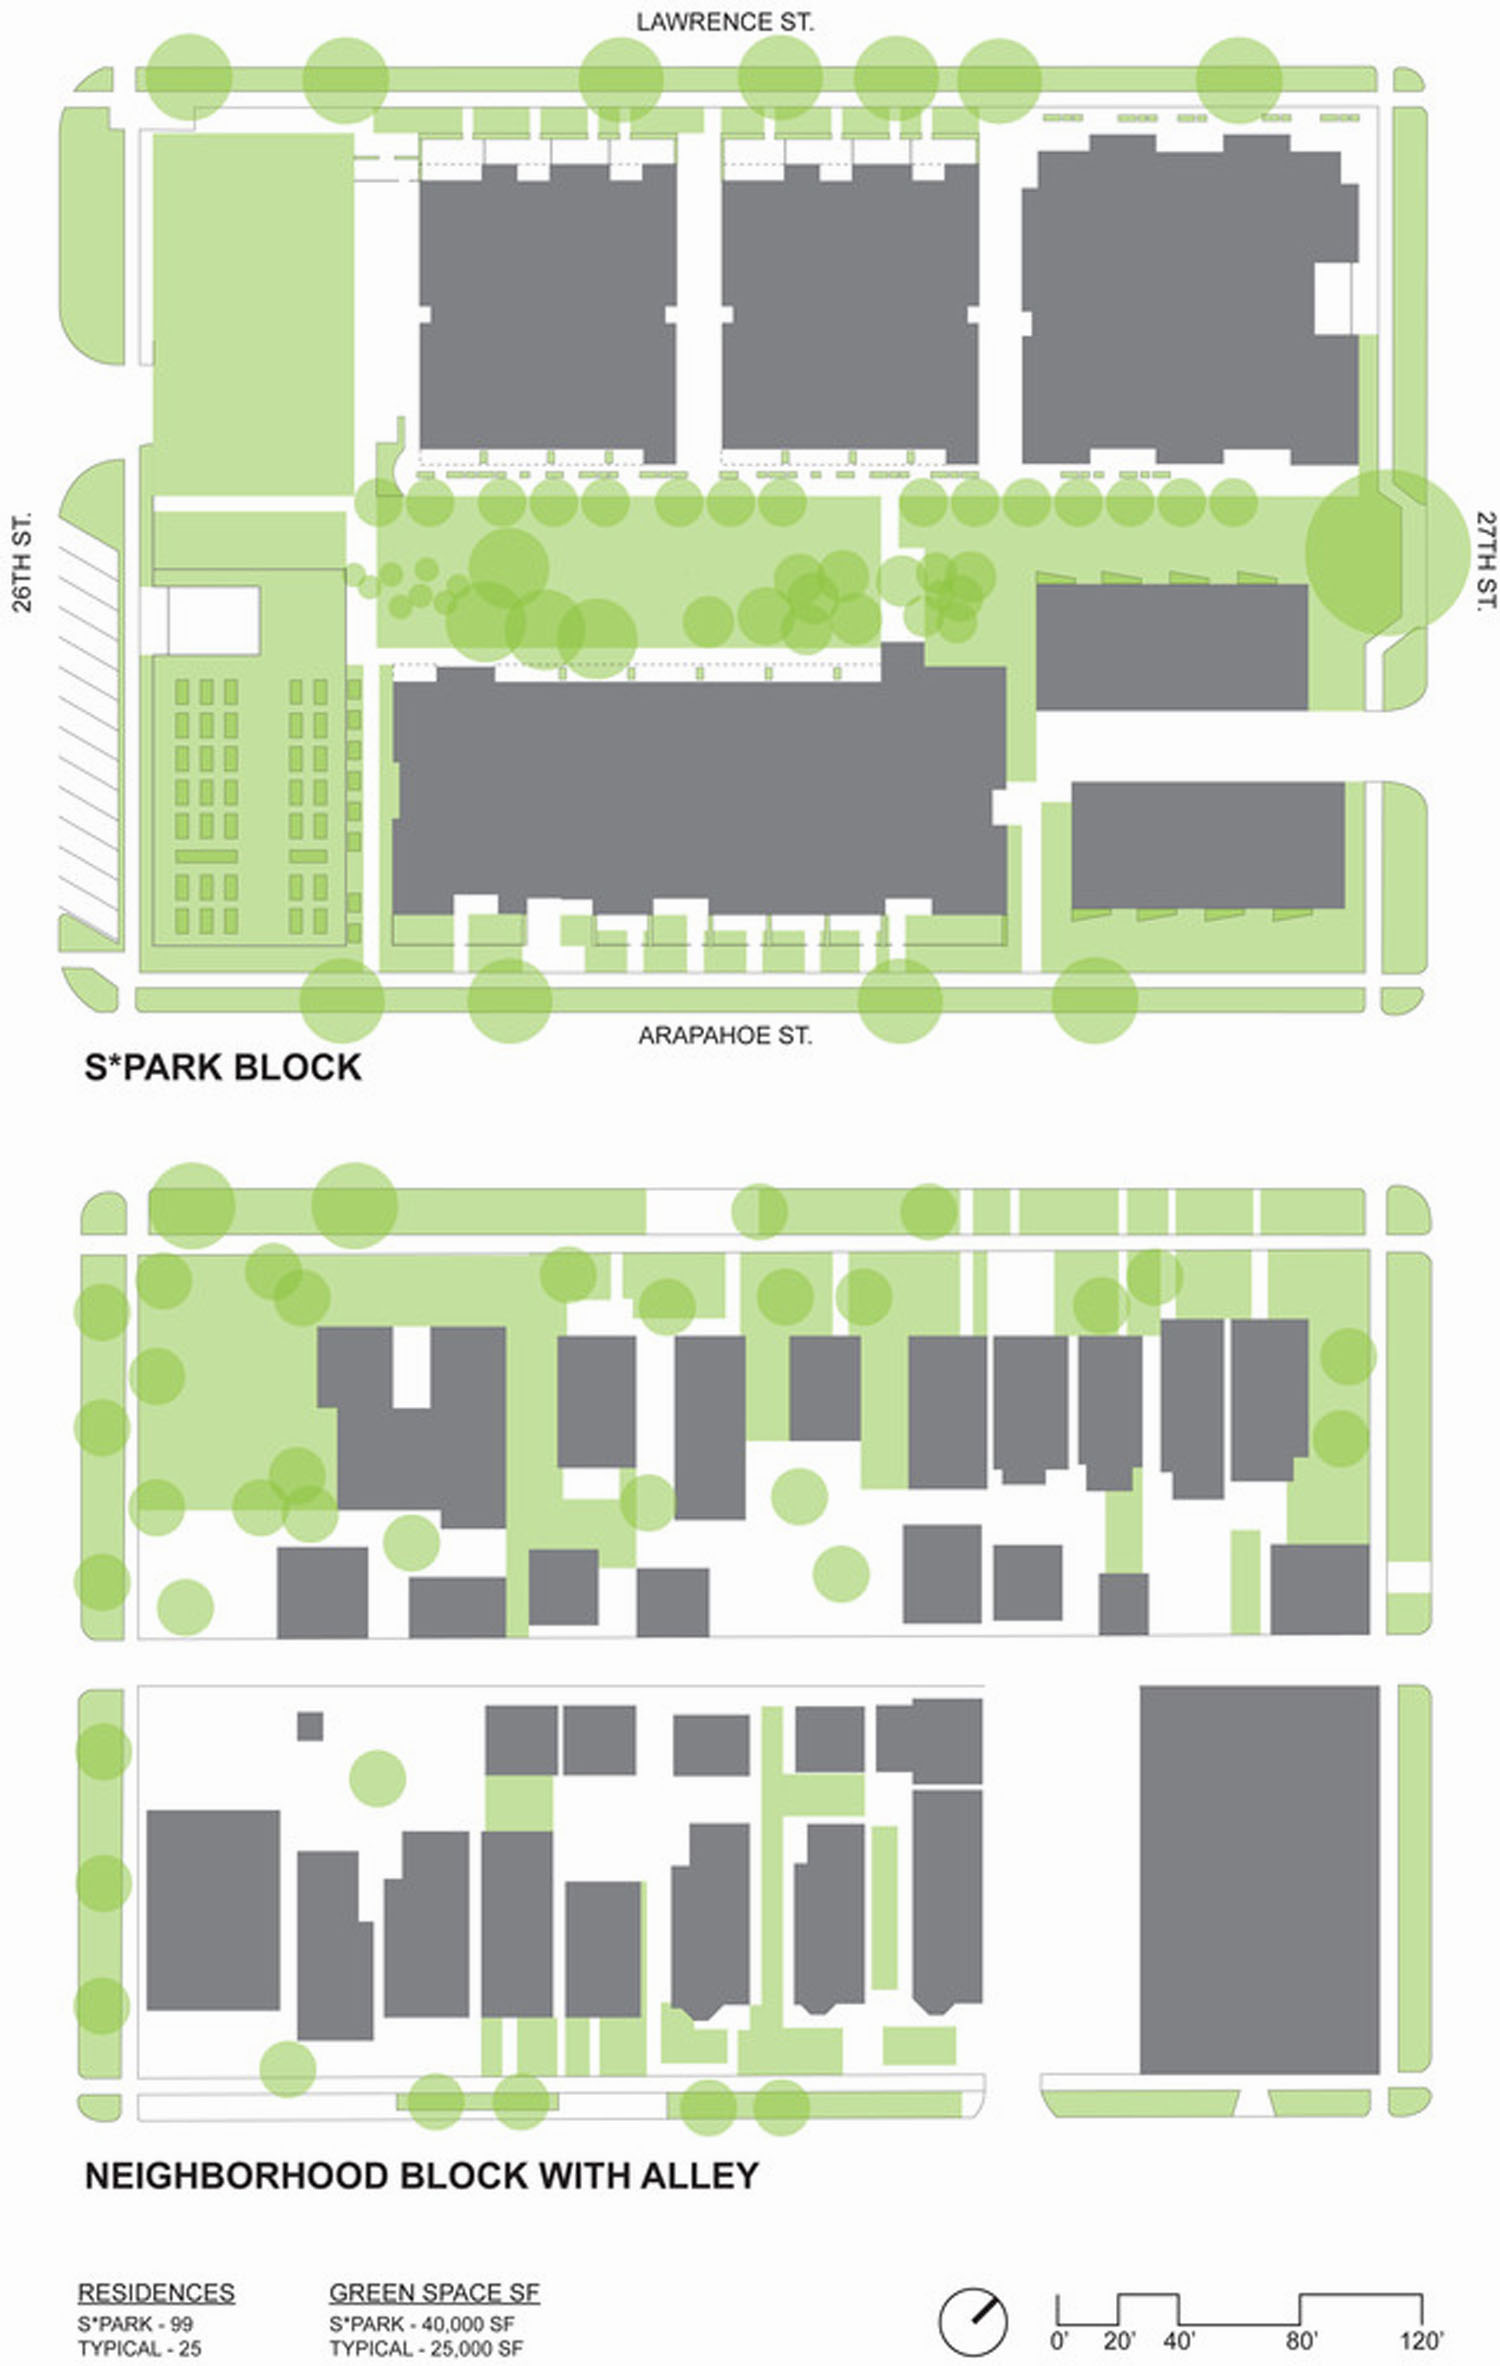 都市农业社区 S*公园(图29)